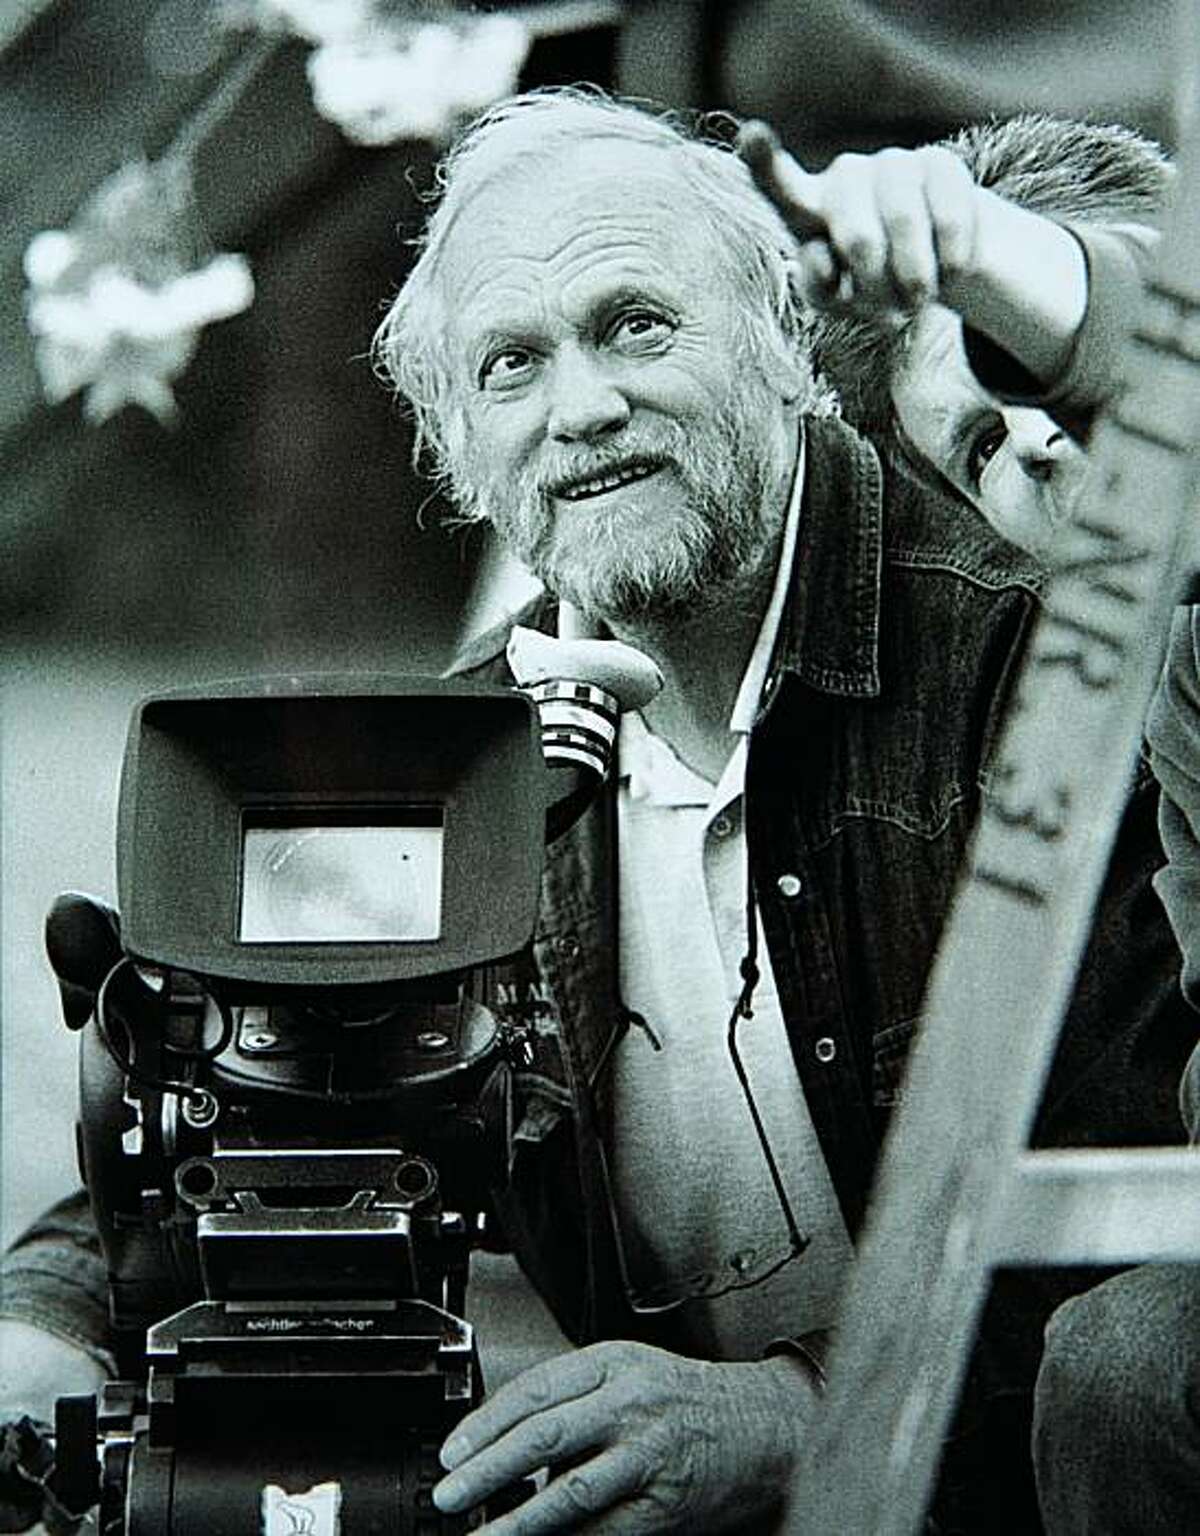 Film director Jan Troell